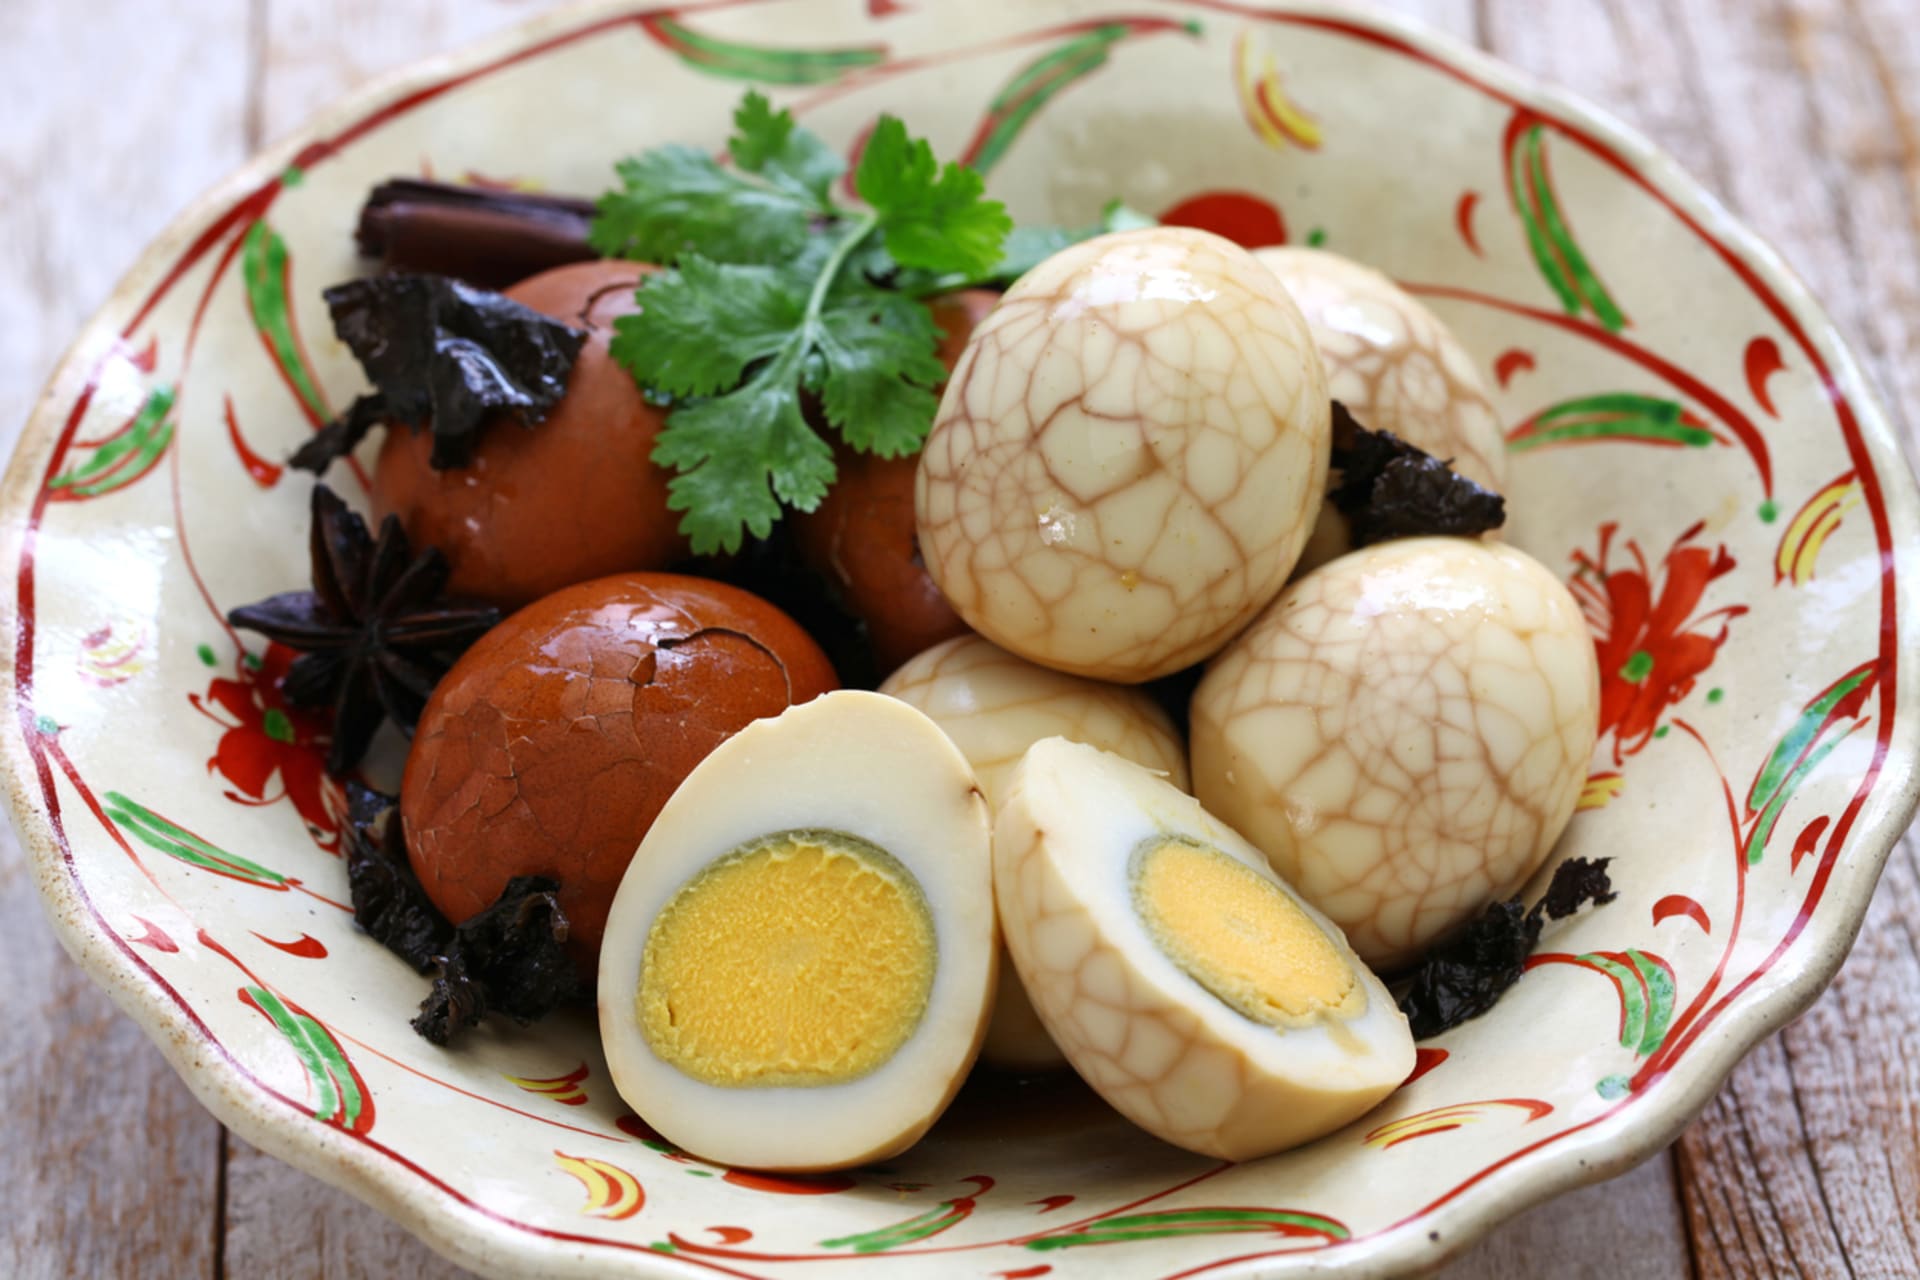 Čínská vejce naložená v černém čaji jsou oblíbenou street food chuťovkou